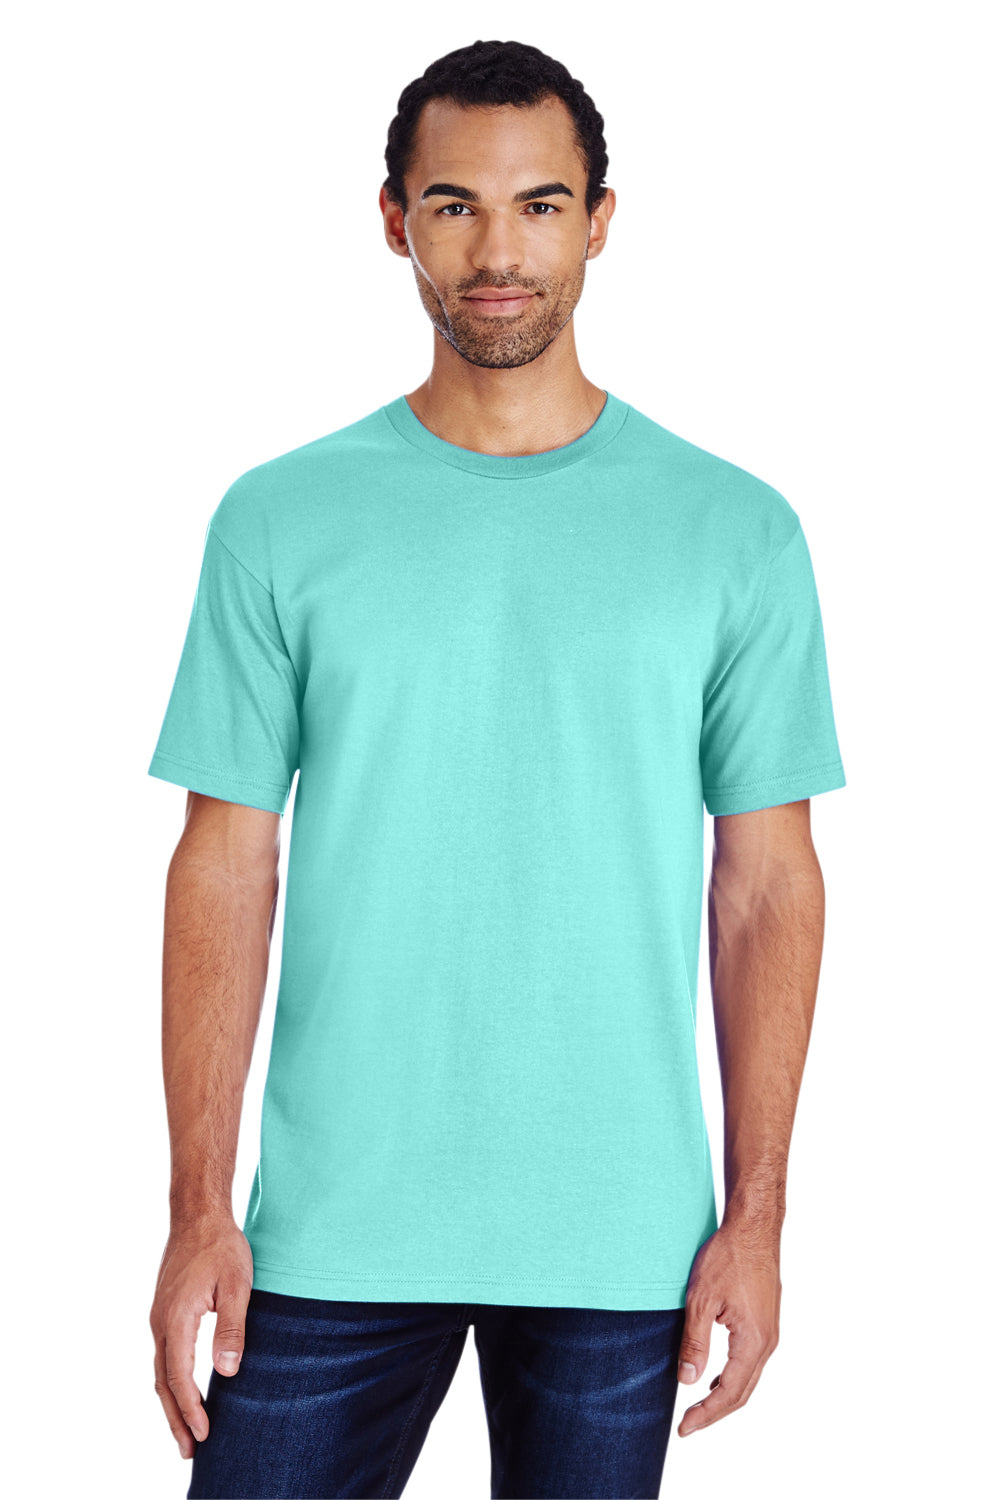 Gildan H000 Mens Hammer Short Sleeve Crewneck T-Shirt Chalky Mint Blue Front